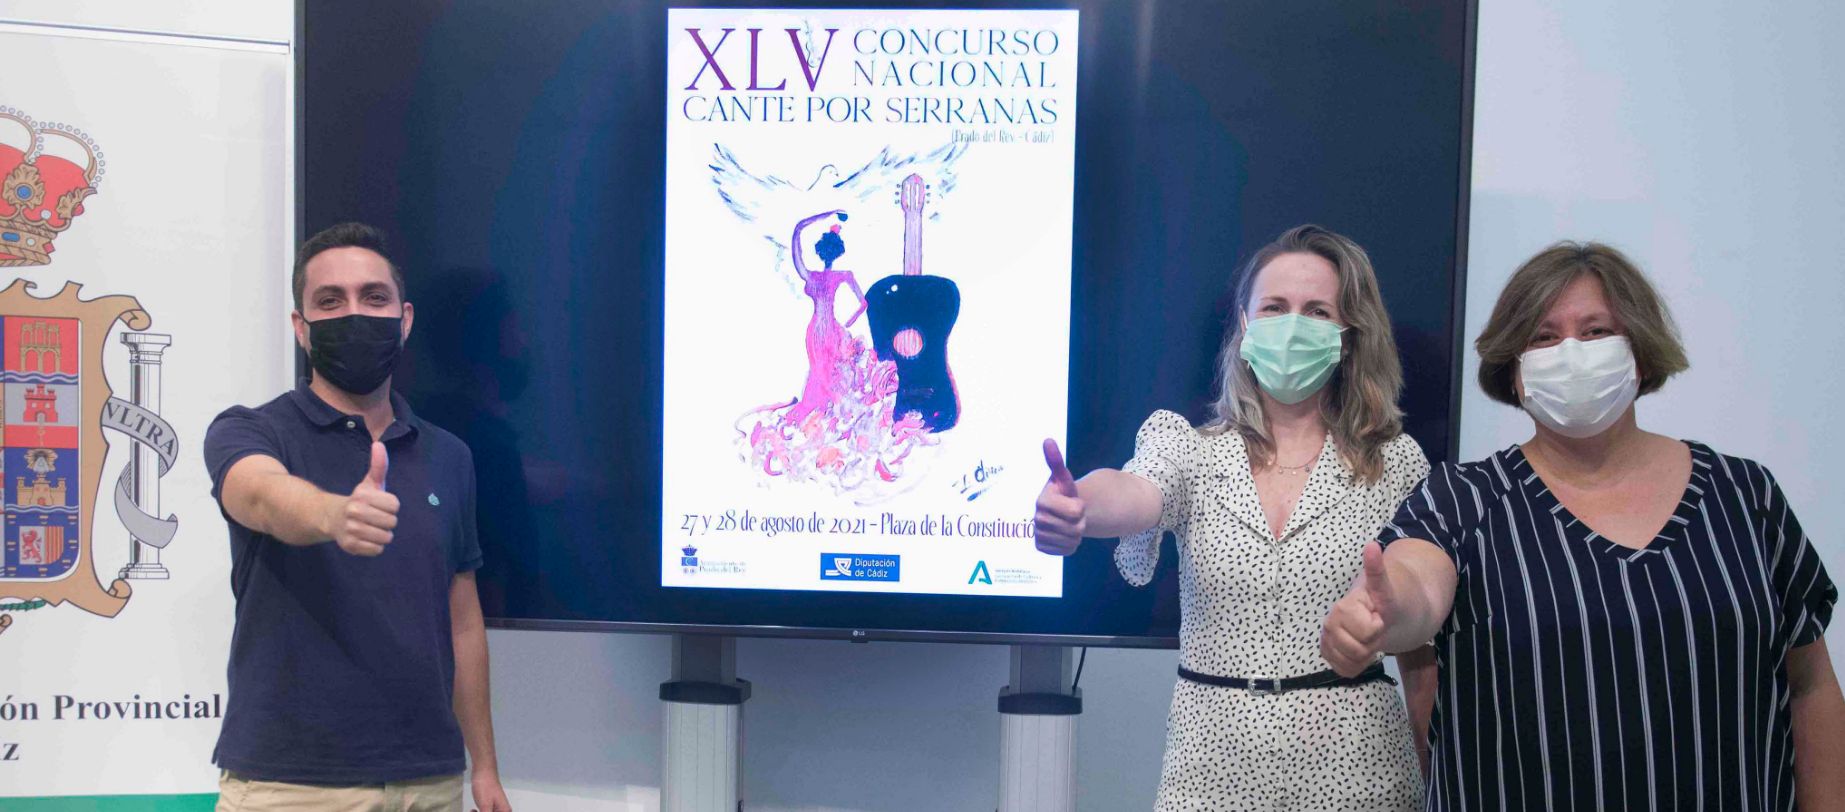 Prado del Rey: cita con el XLV Concurso Nacional de Cante por Serranas